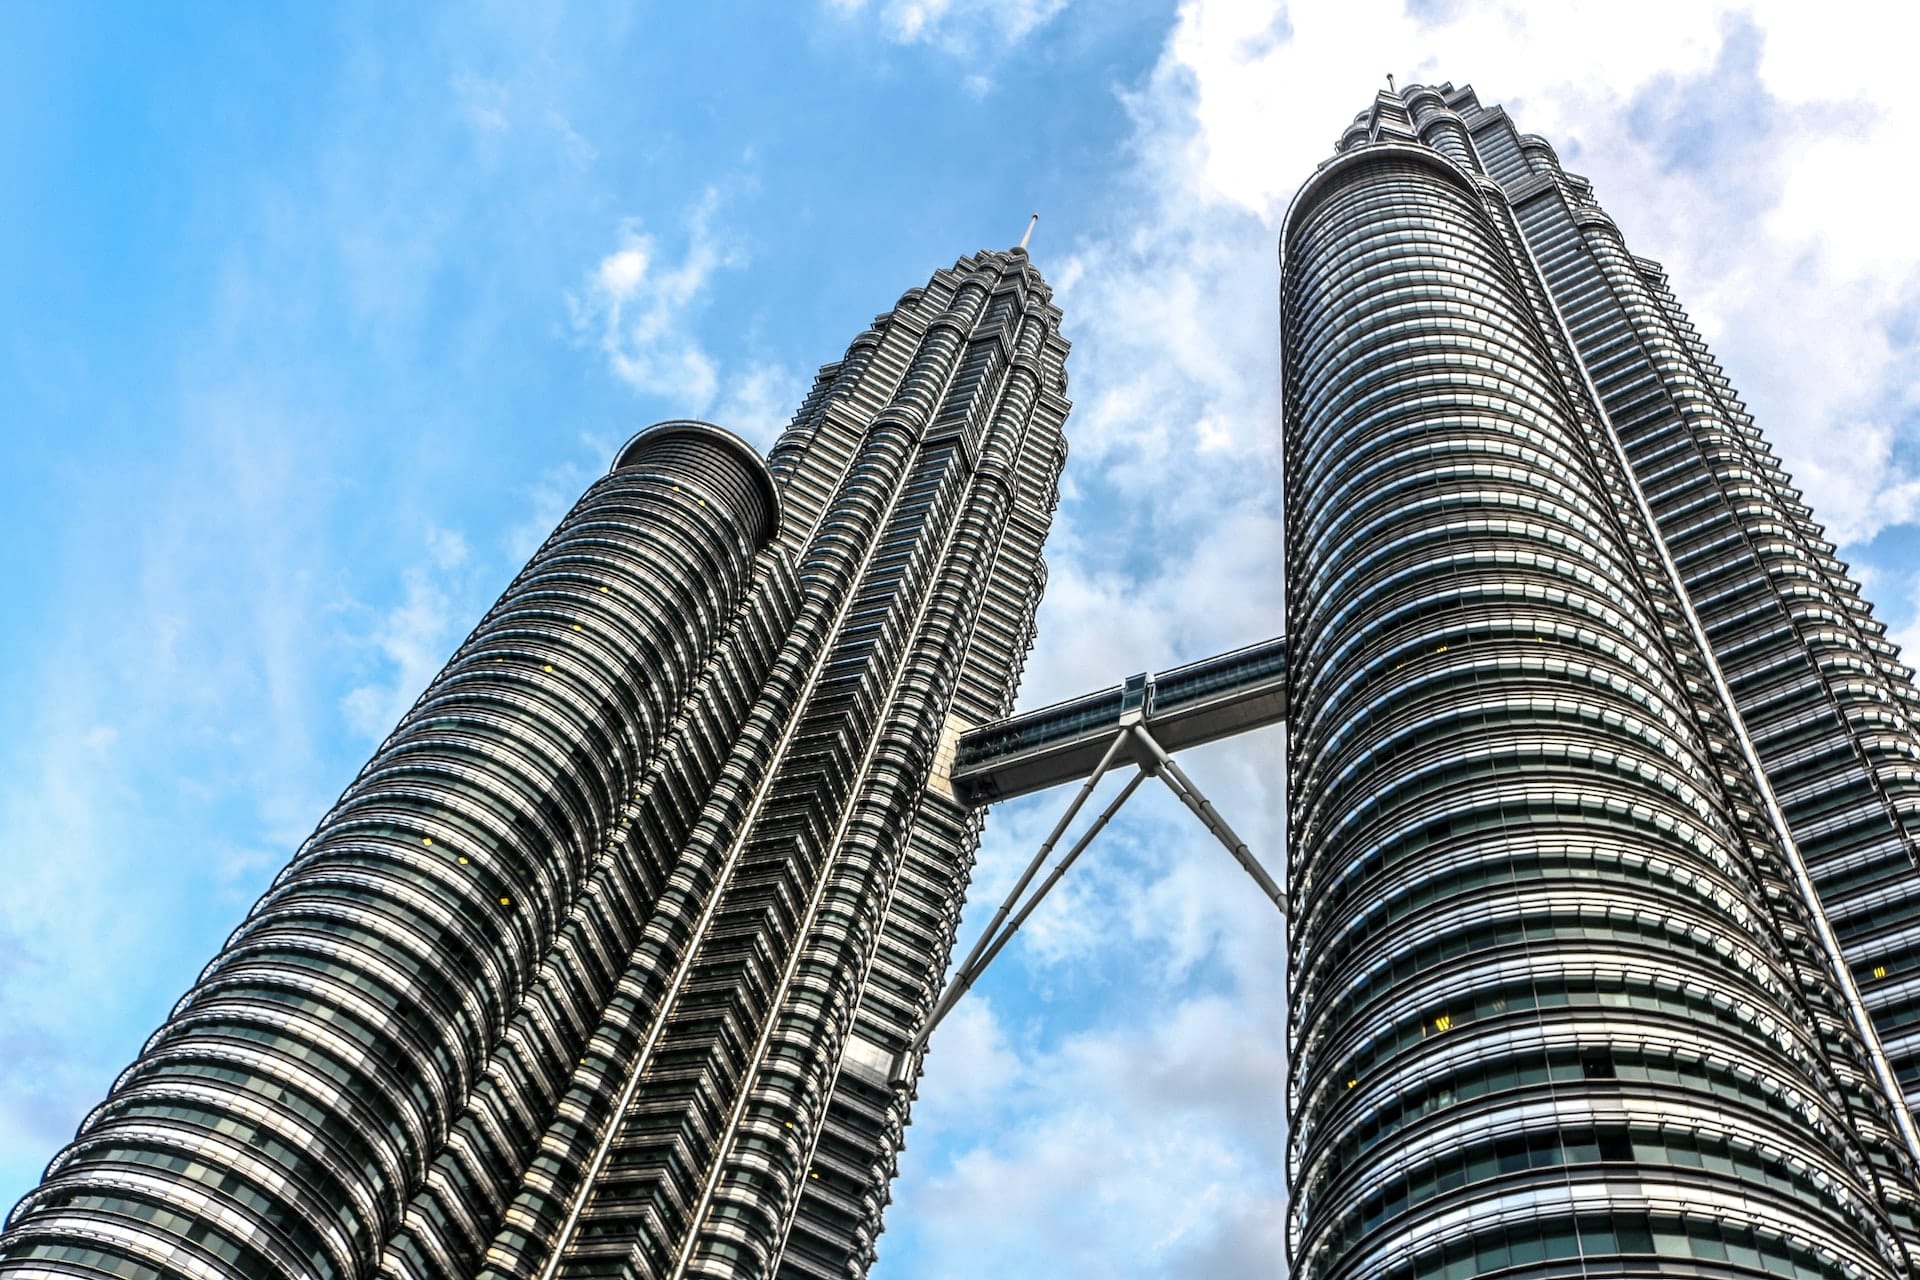 Sede de las imponentes Torres Gemelas Petronas, KLCC es la mejor zona donde alojarse en Kuala Lumpur para vivir la bulliciosa metrópolis.